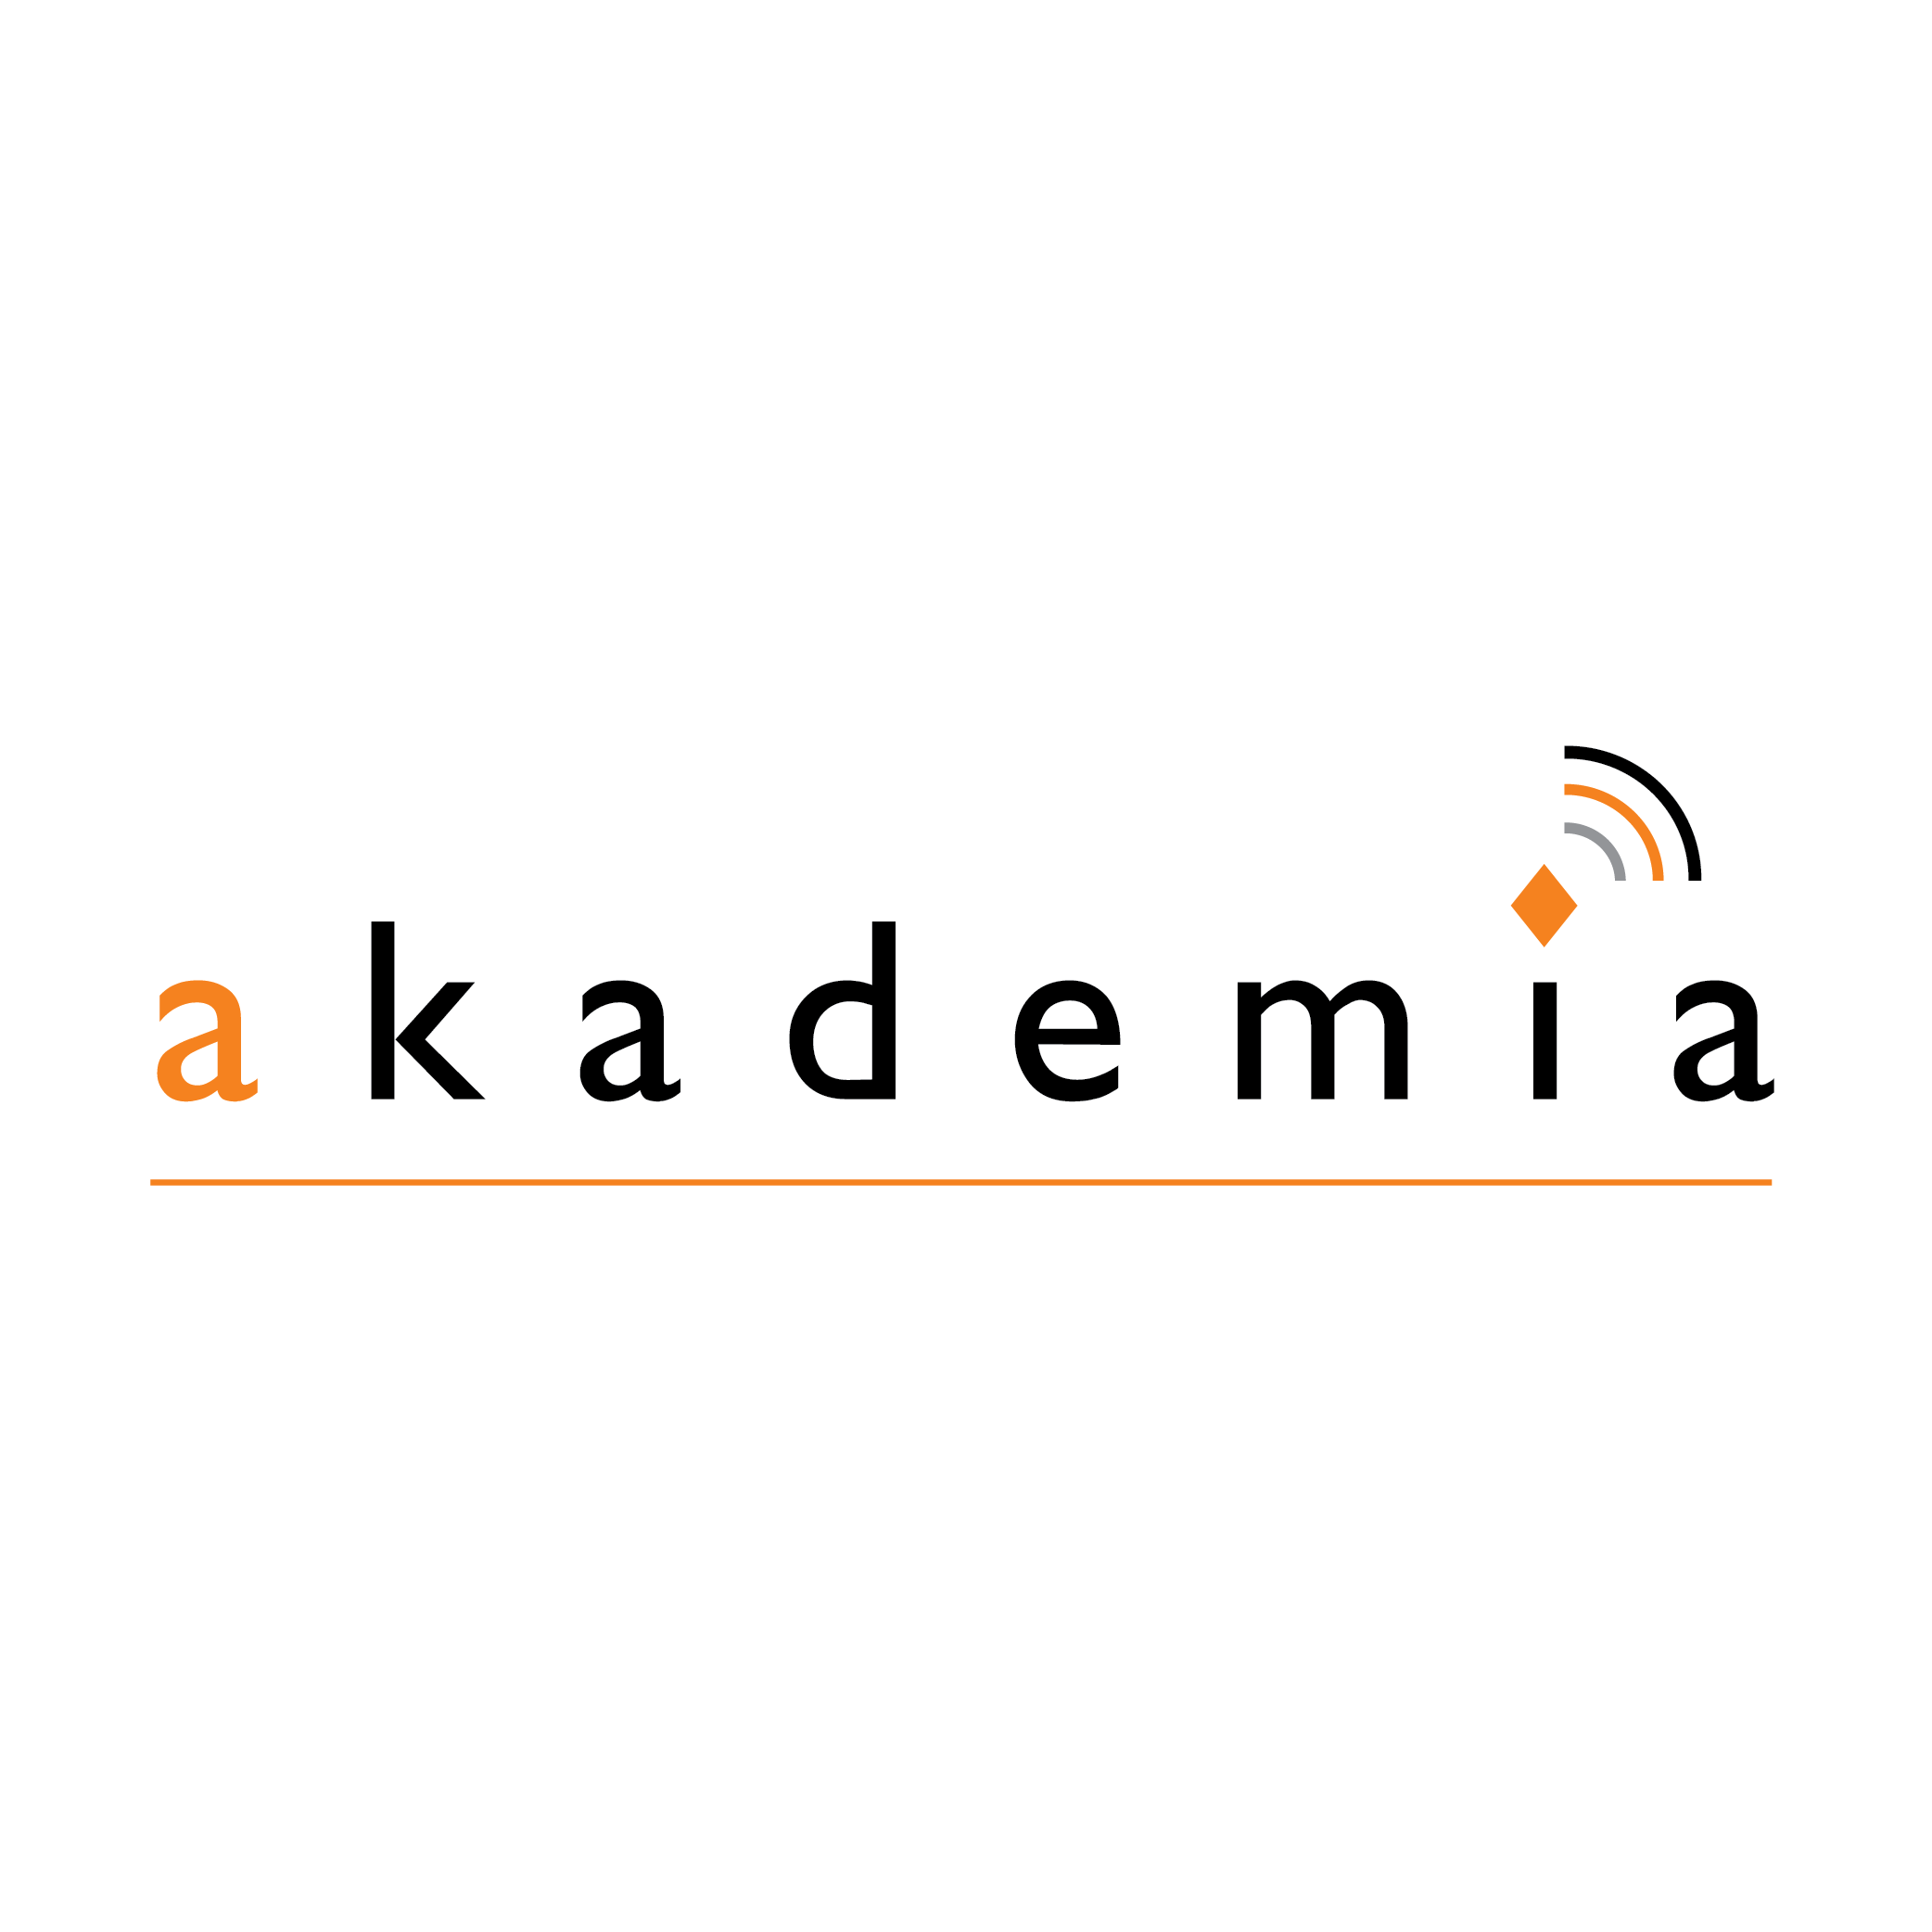 Akademia